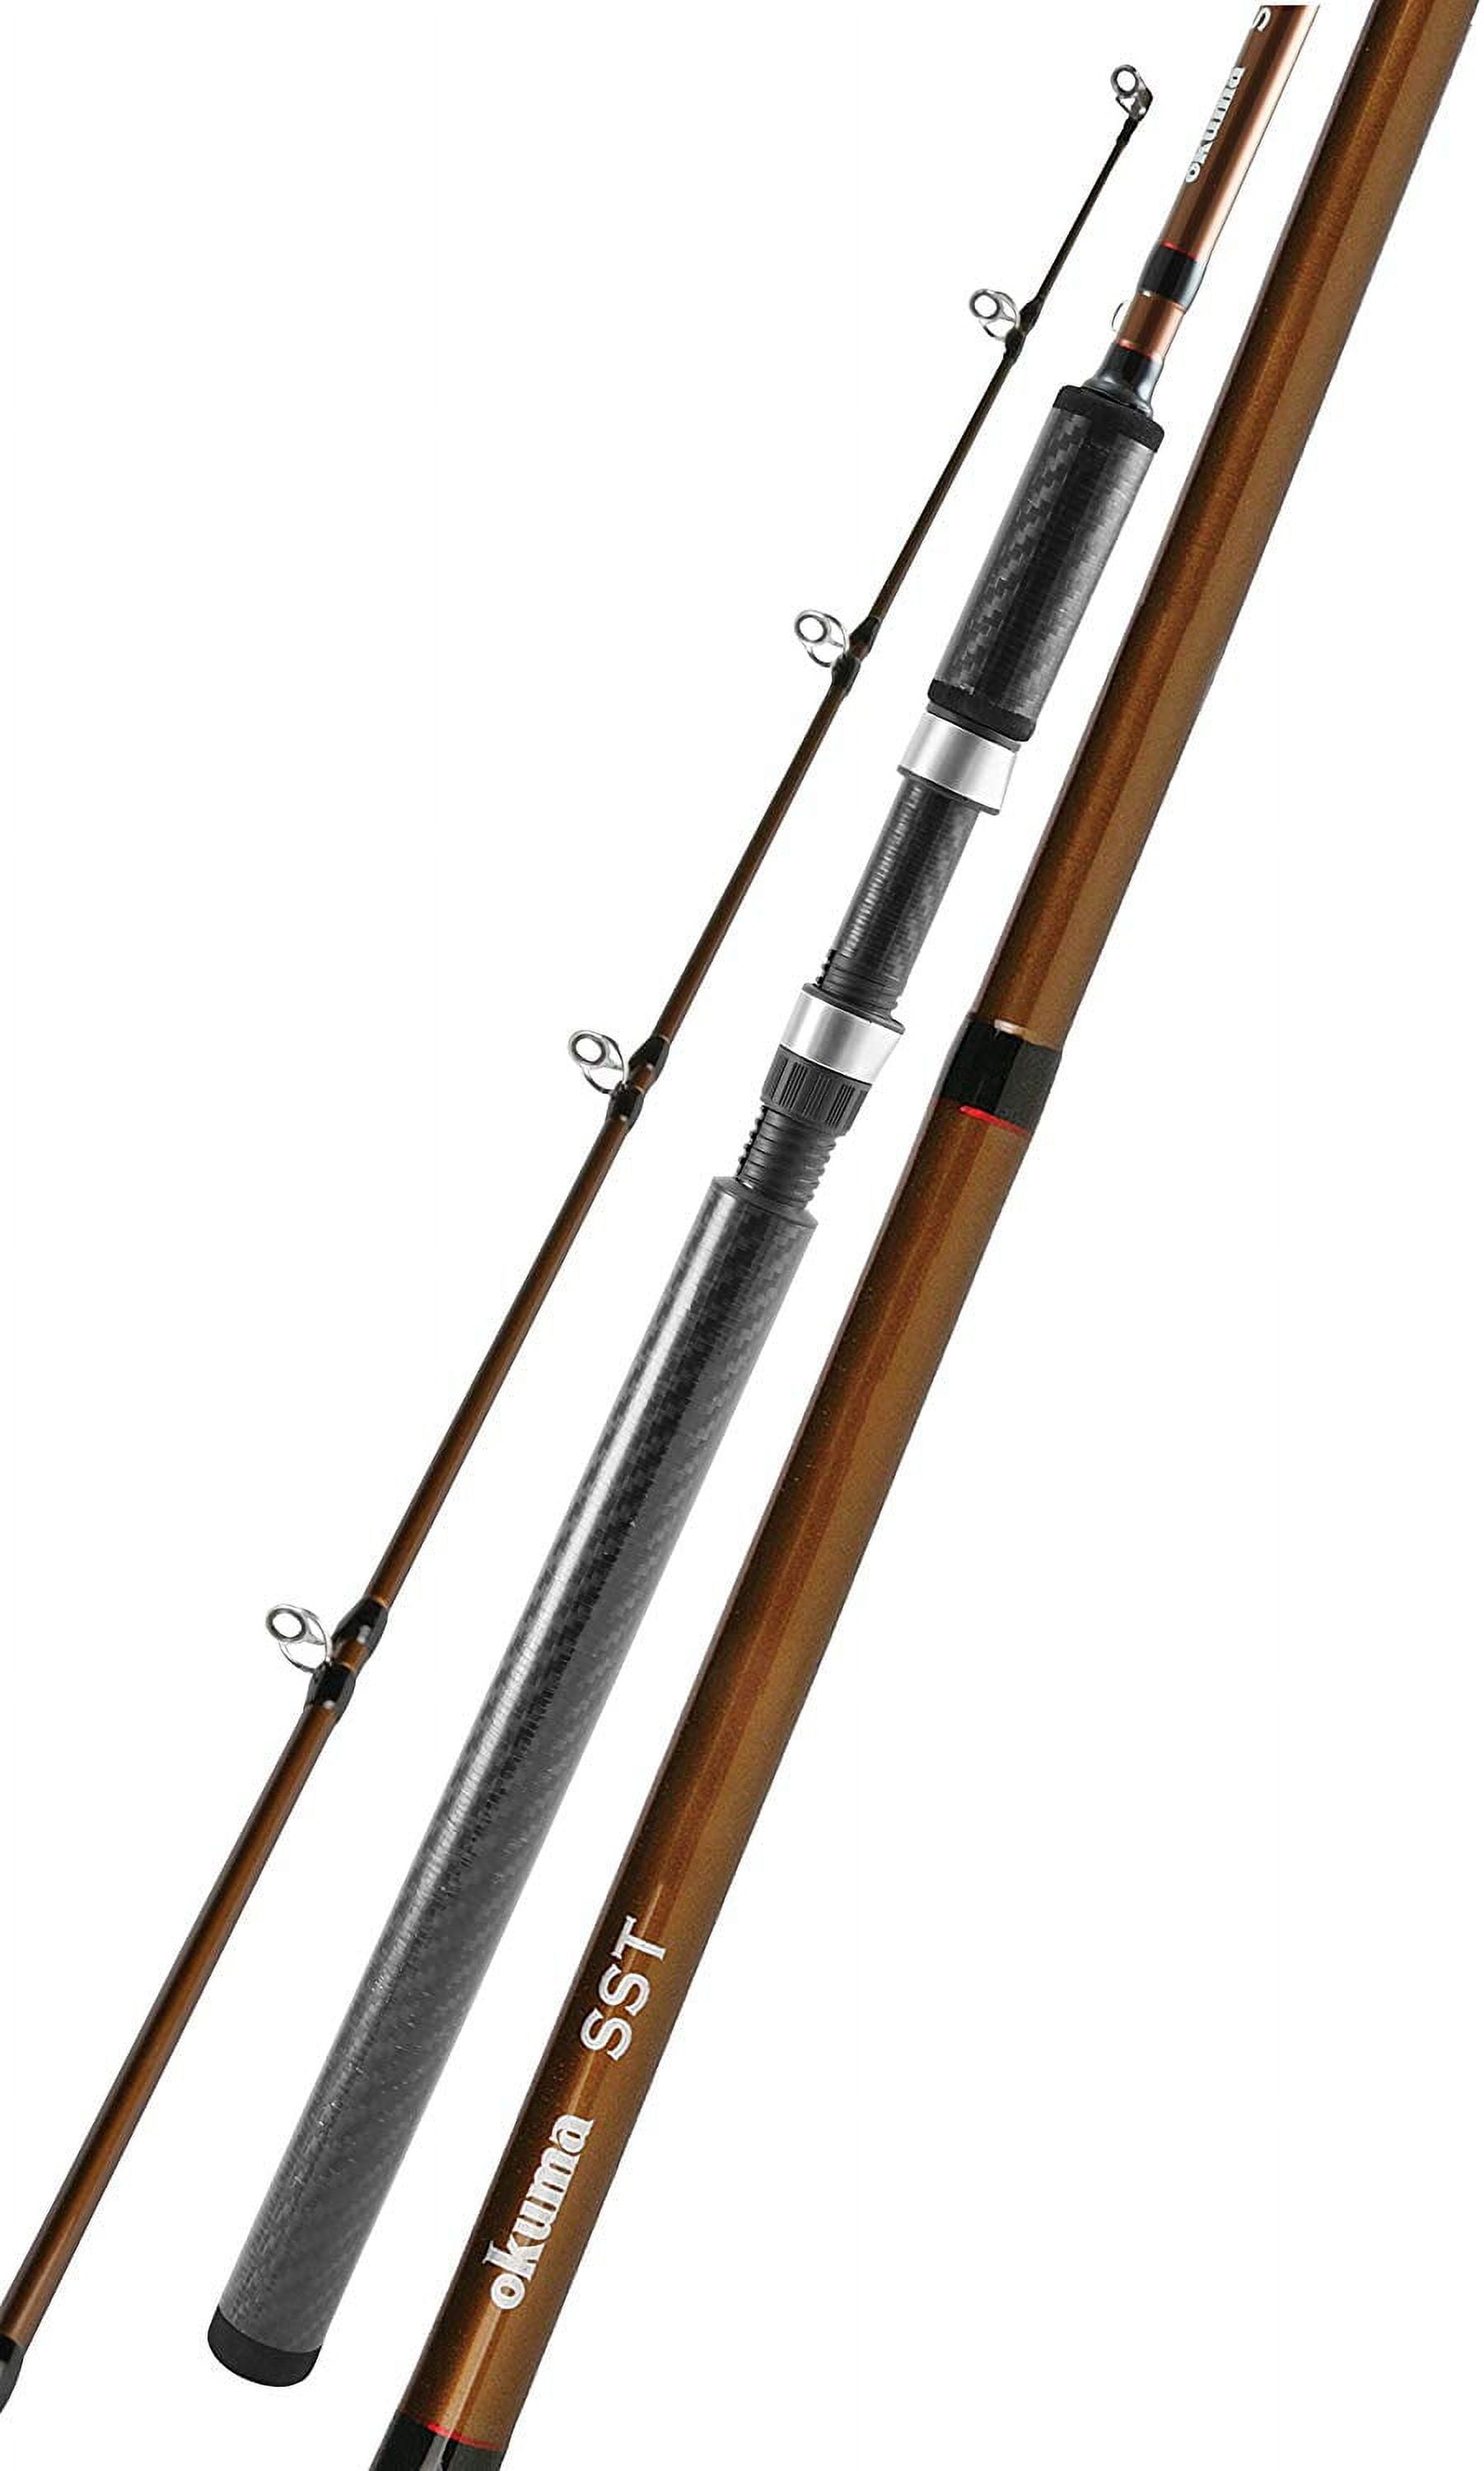 OKUMA 8'6 SST Carbon Grip Spinning Rod, Medium Heavy Power